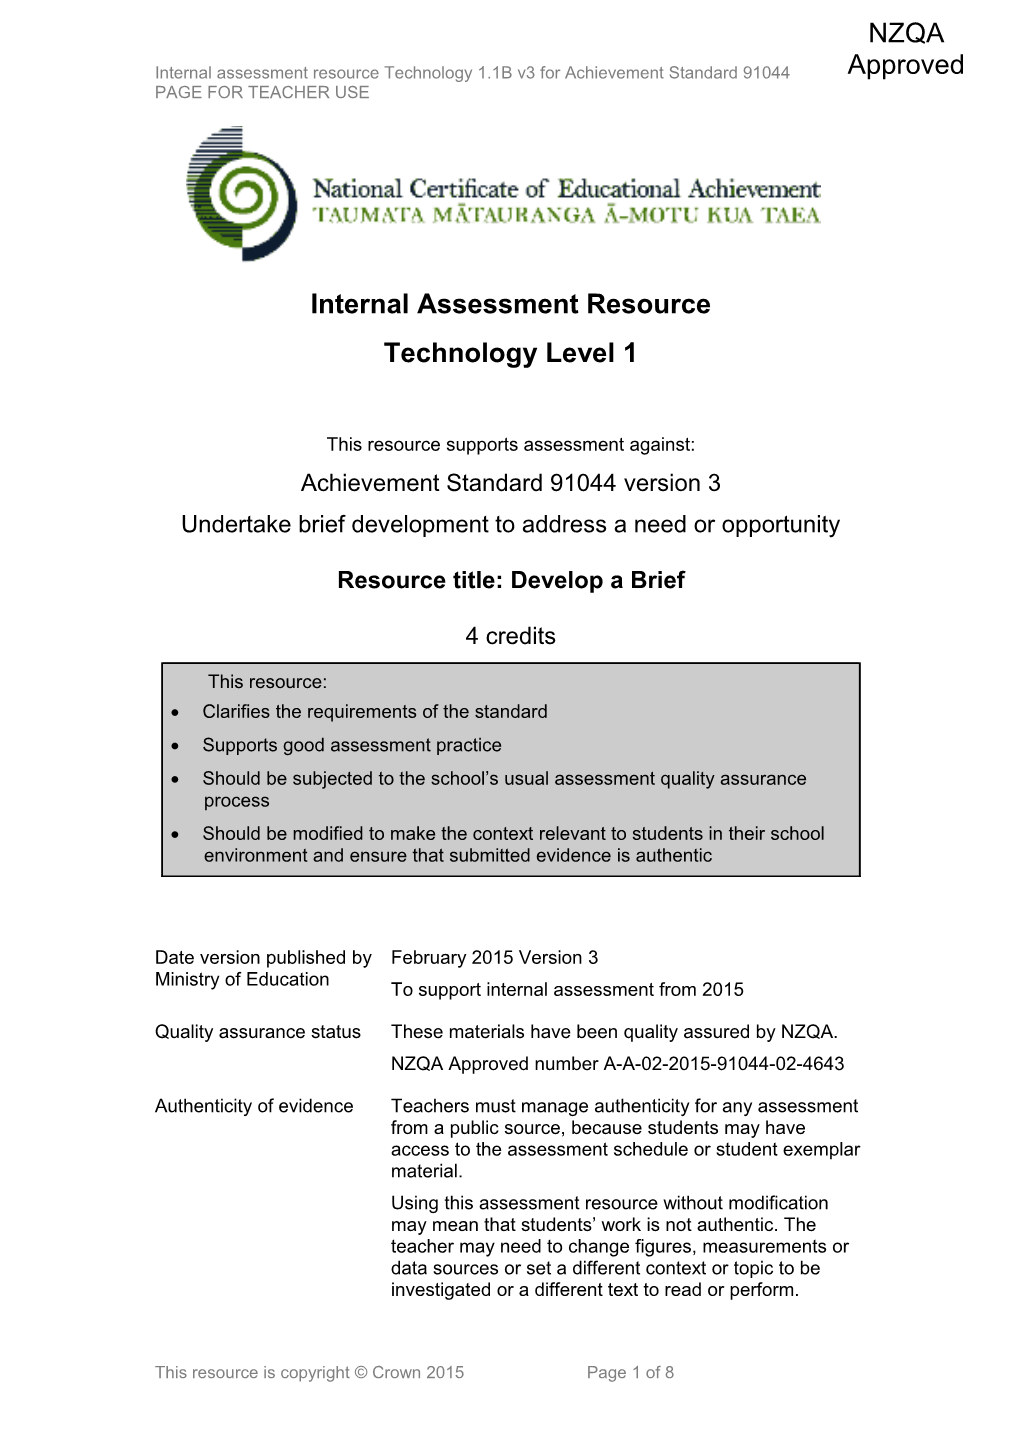 Level 1 Technology Internal Assessment Resource